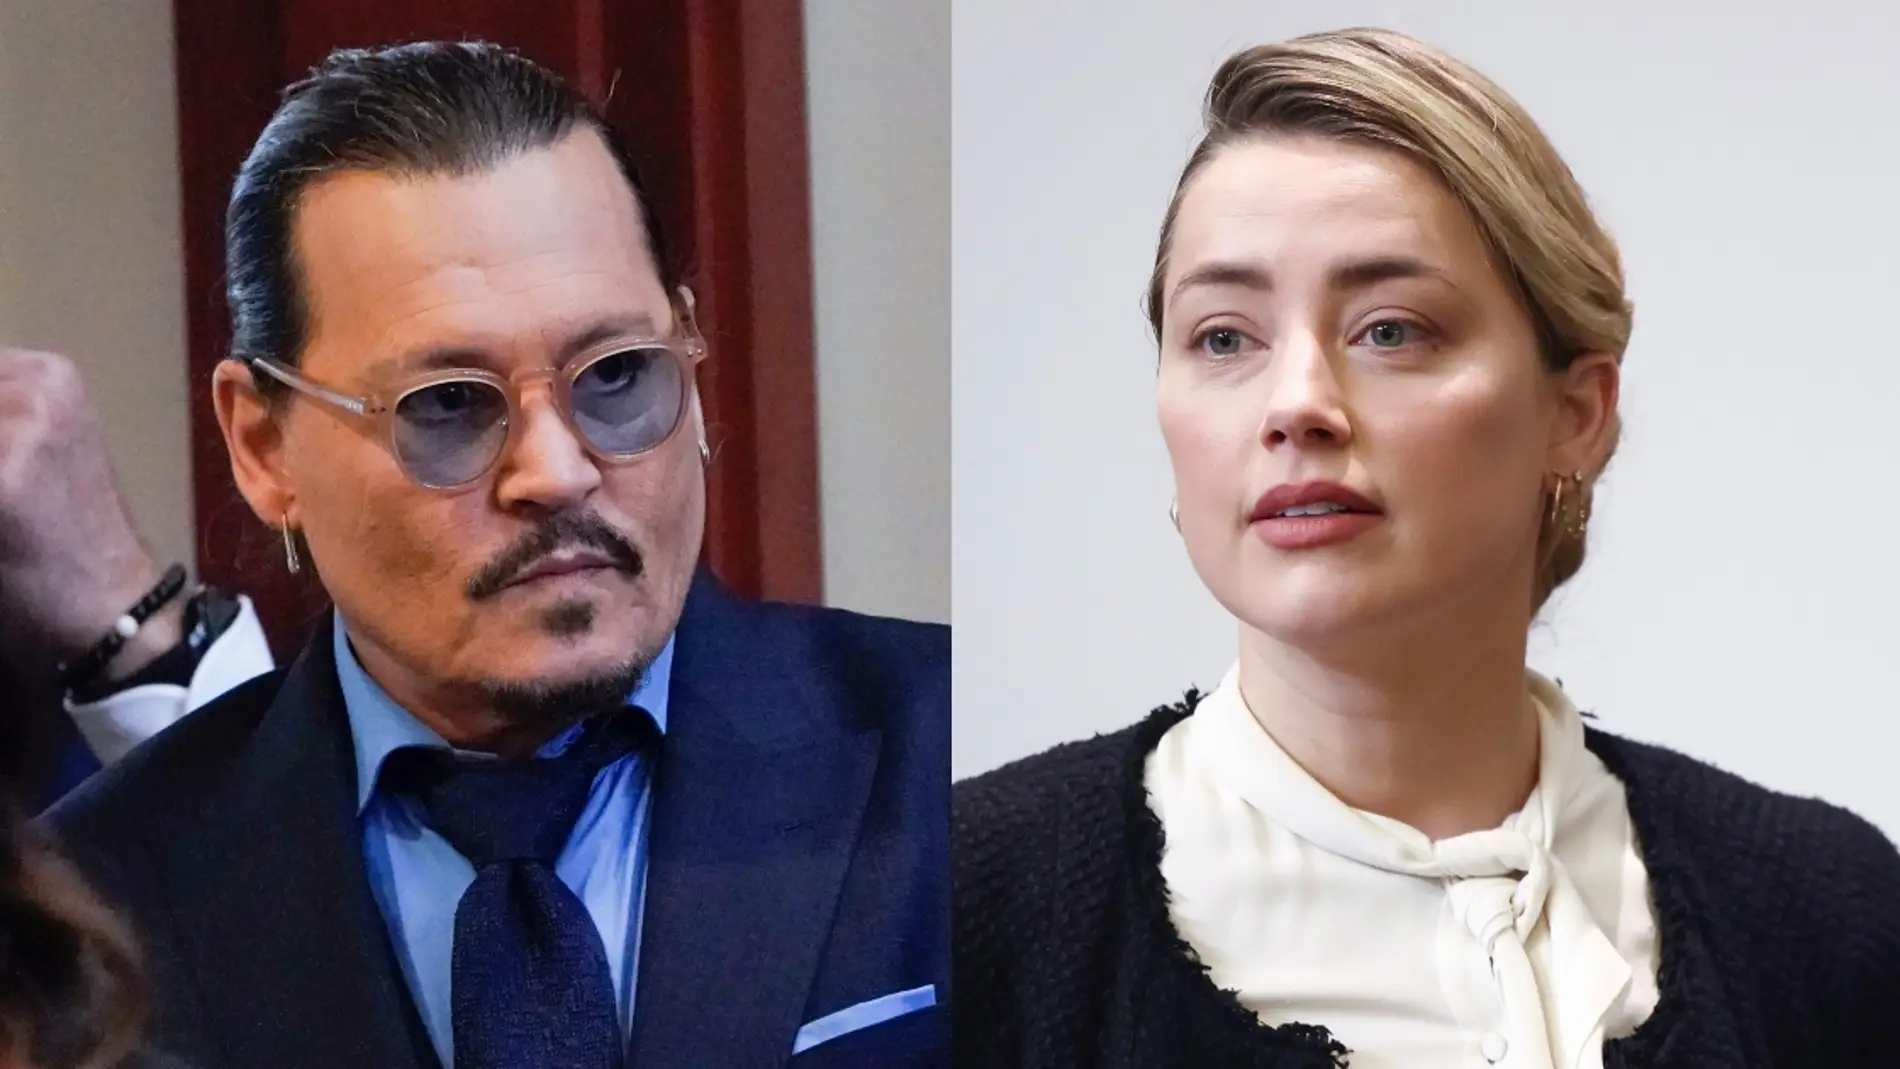 Johnny Depp contesta nova evidência apresentada por Amber Heard em  julgamento - Folha do ES